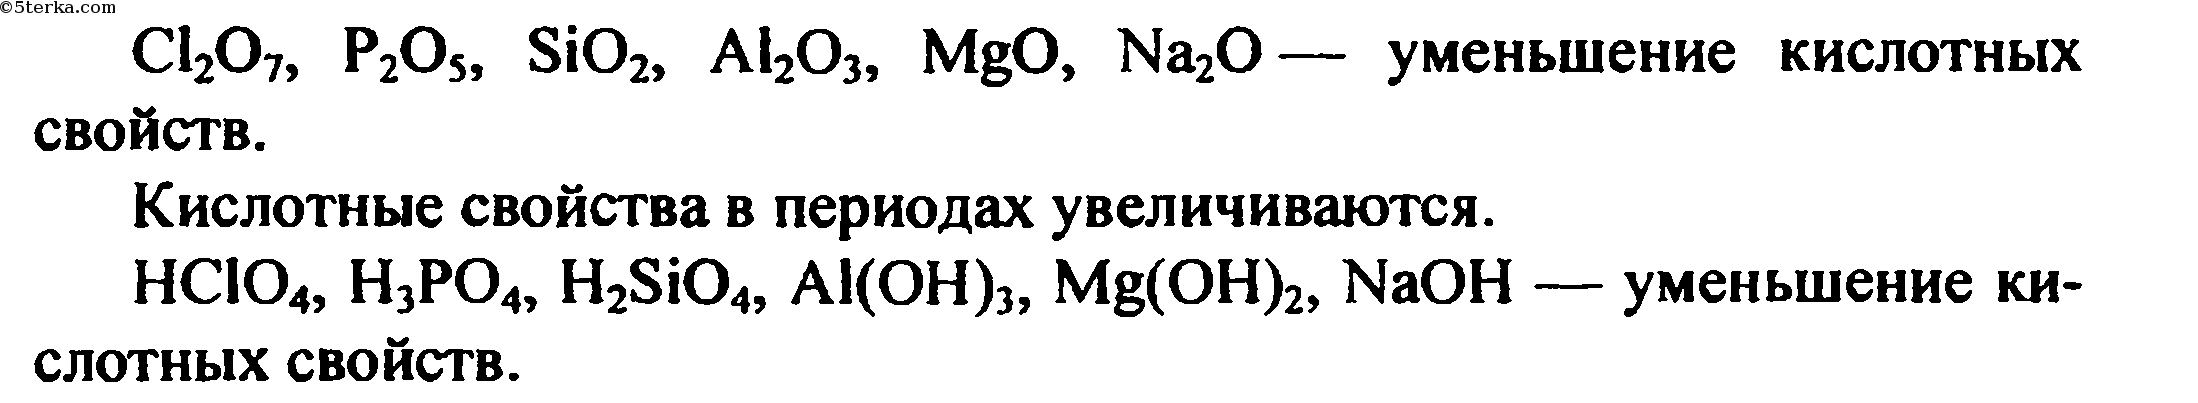 Гидроксид sio2 формула. Порядок уменьшения кислотных свойств их оксидов. Порядок уменьшения кислотеый свойств. Расположите в порядке ослабления кислотных свойств. Расположить в порядке ослабевания кислотных свойств.